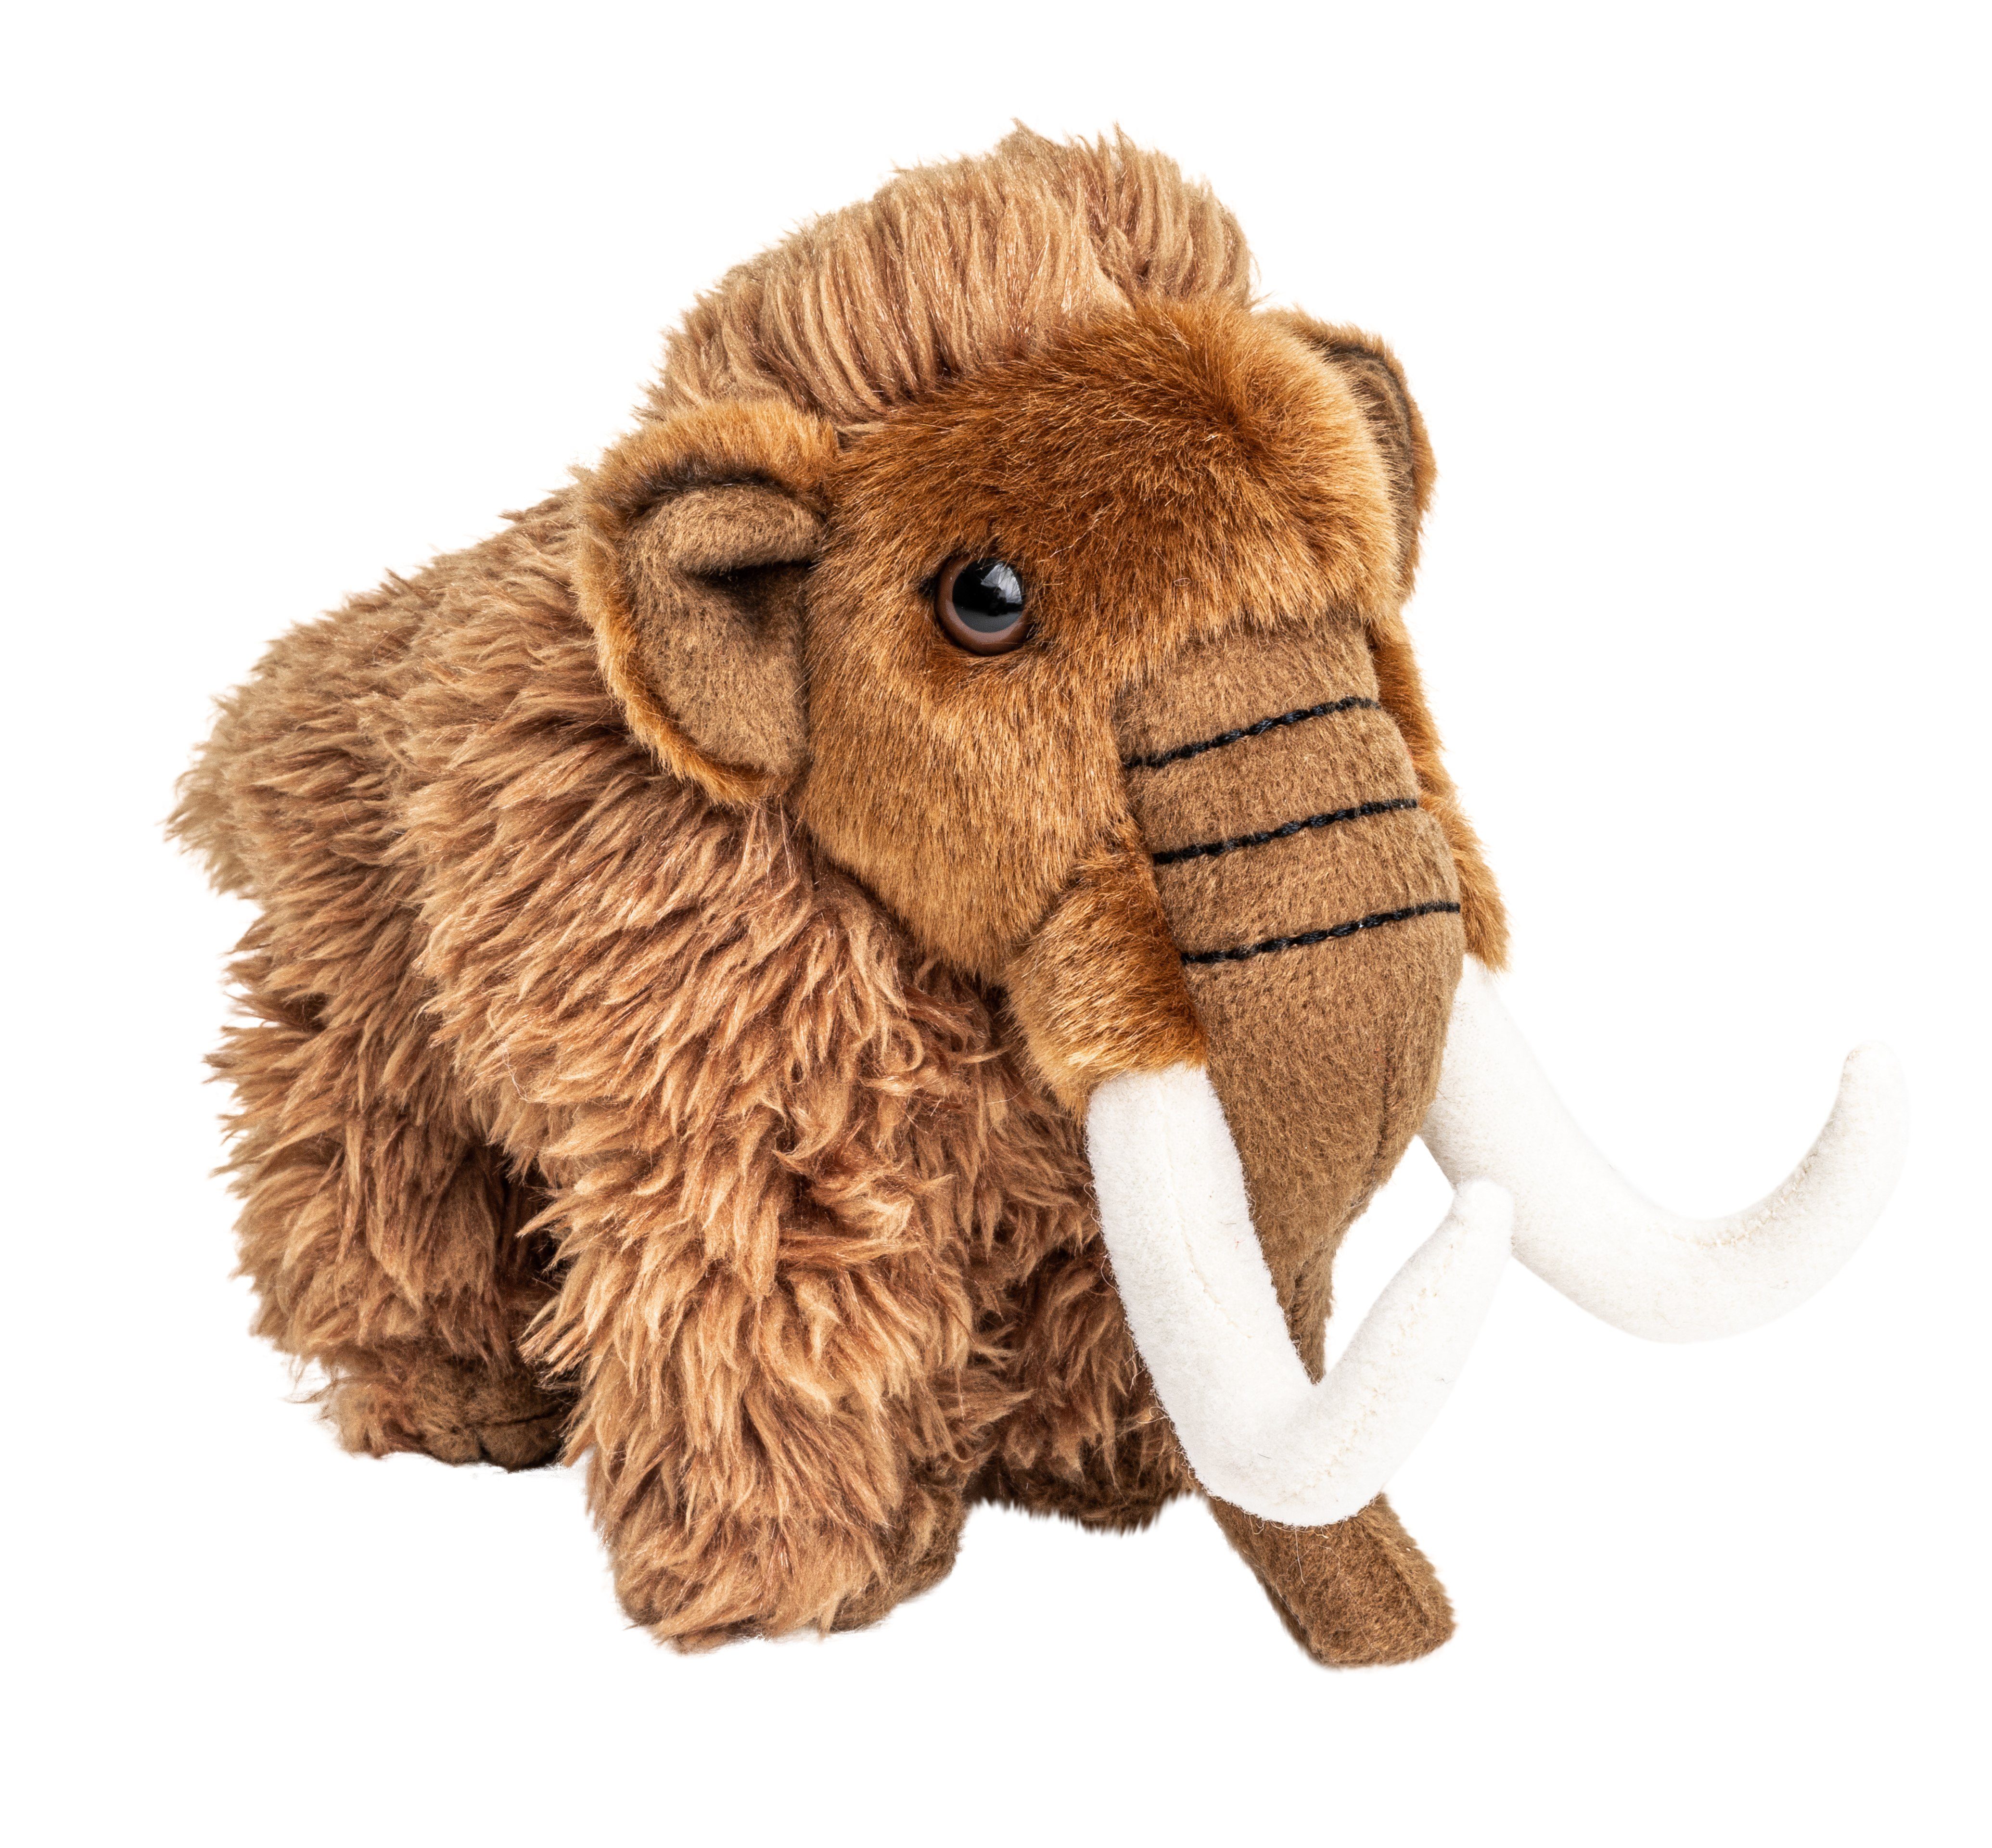 Uni-Toys Kuscheltier Mammut - 16 cm (Höhe) - Plüsch-Elefant - Plüschtier, zu 100 % recyceltes Füllmaterial